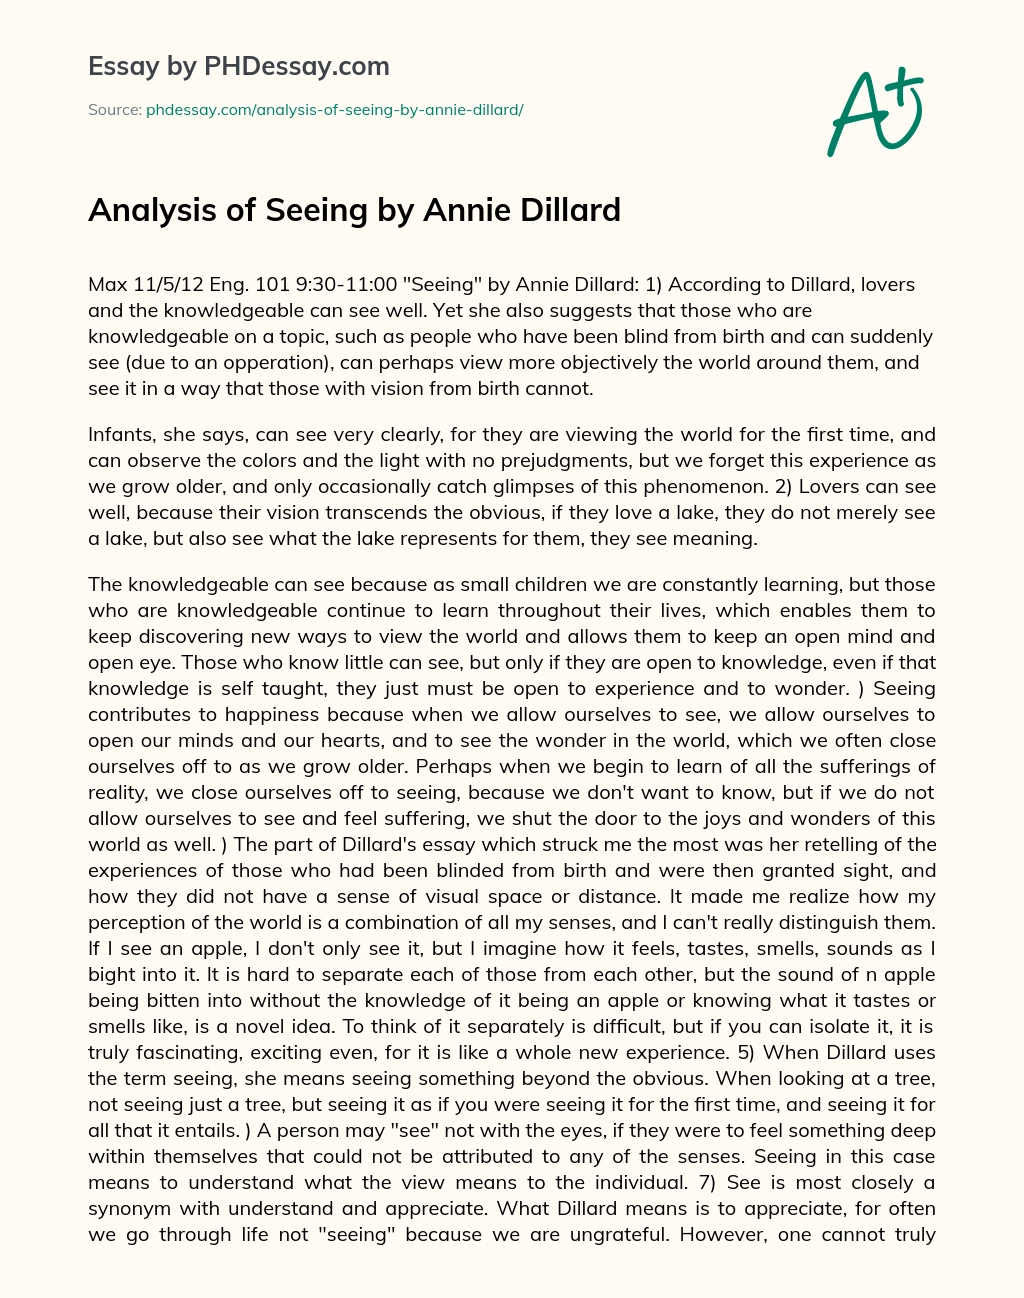 Analysis of Seeing by Annie Dillard essay